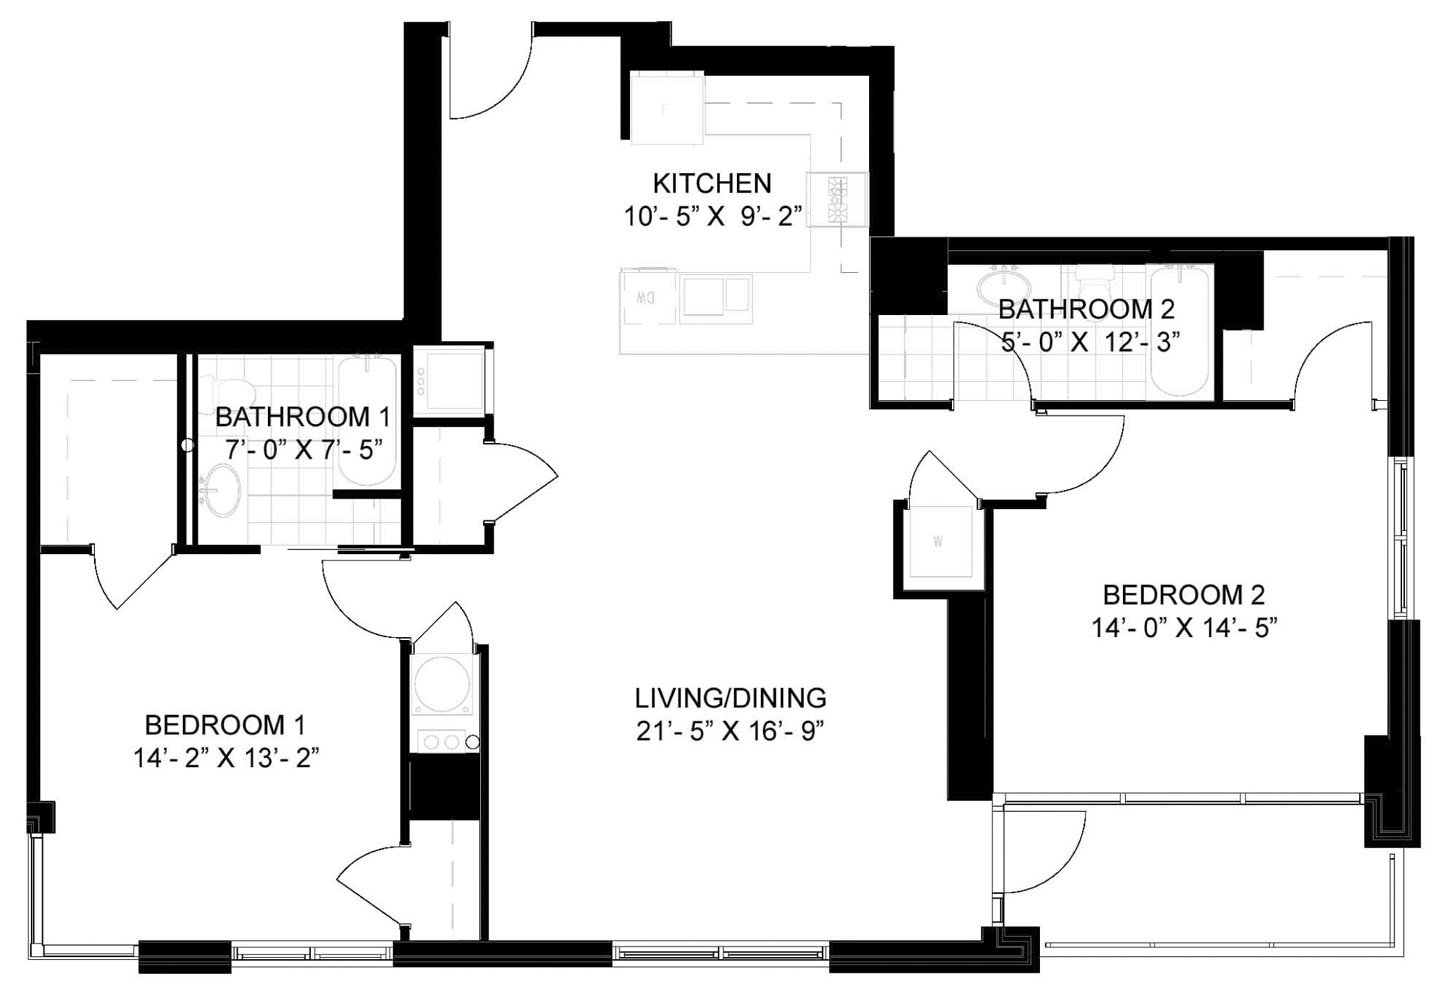 floorplan 0401 image